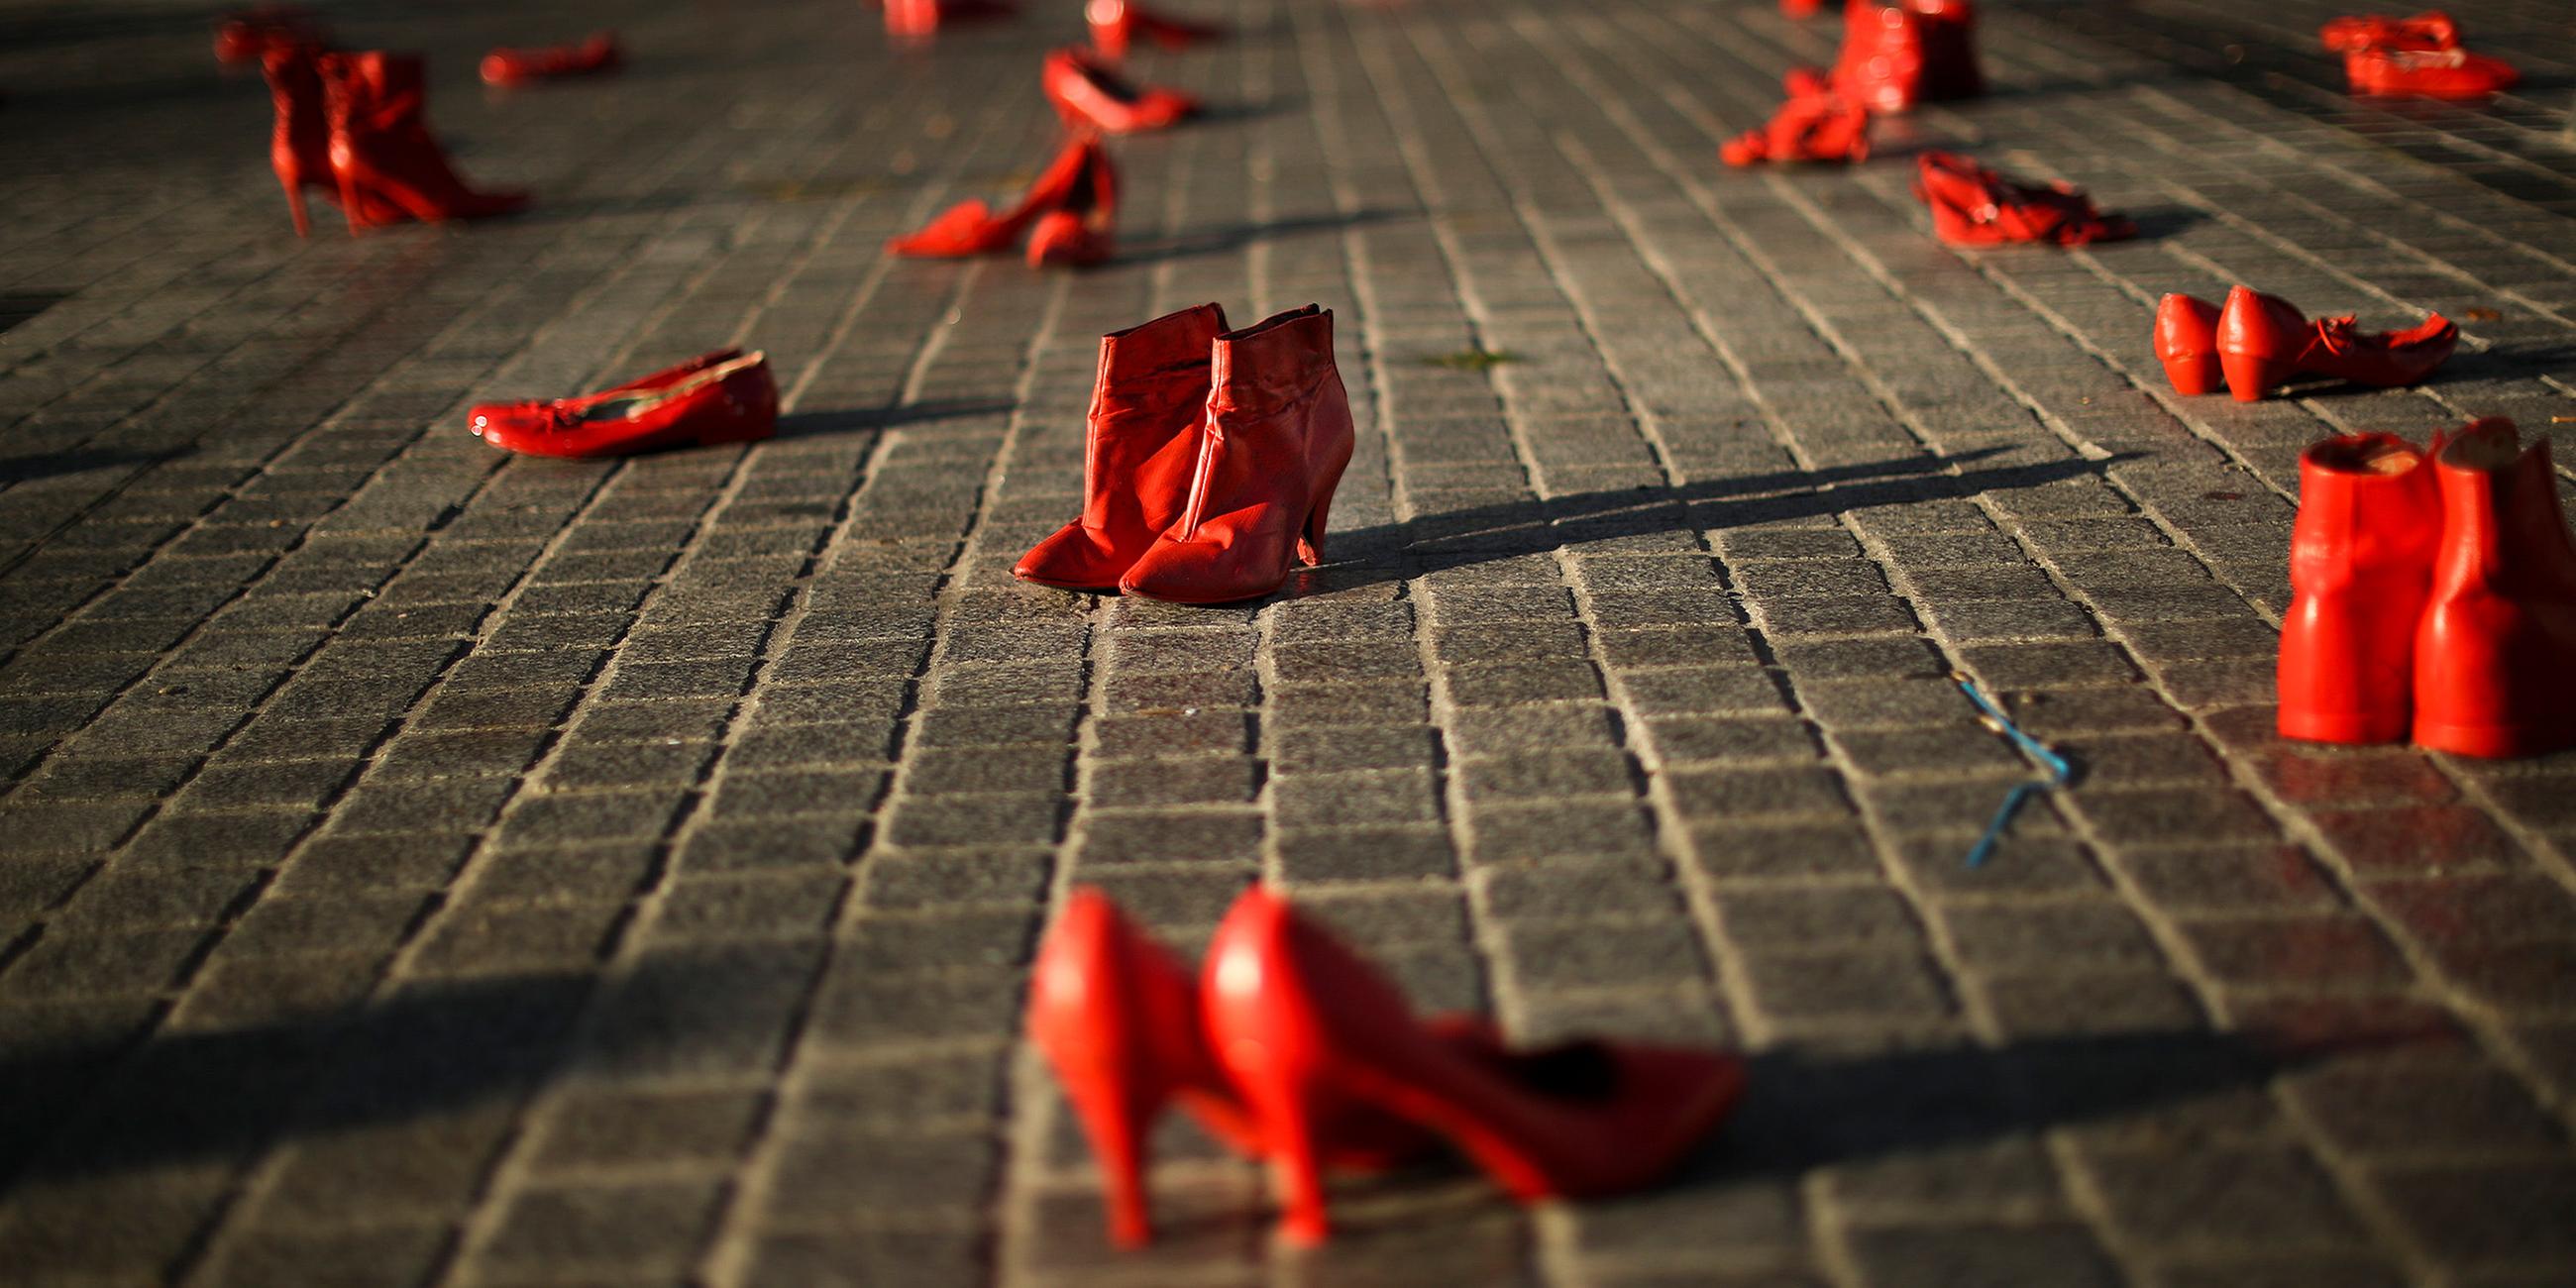 Rote Schuhe, Kunstinstallation zum Thema "Gewalt gegen Frauen" in Brüssel.